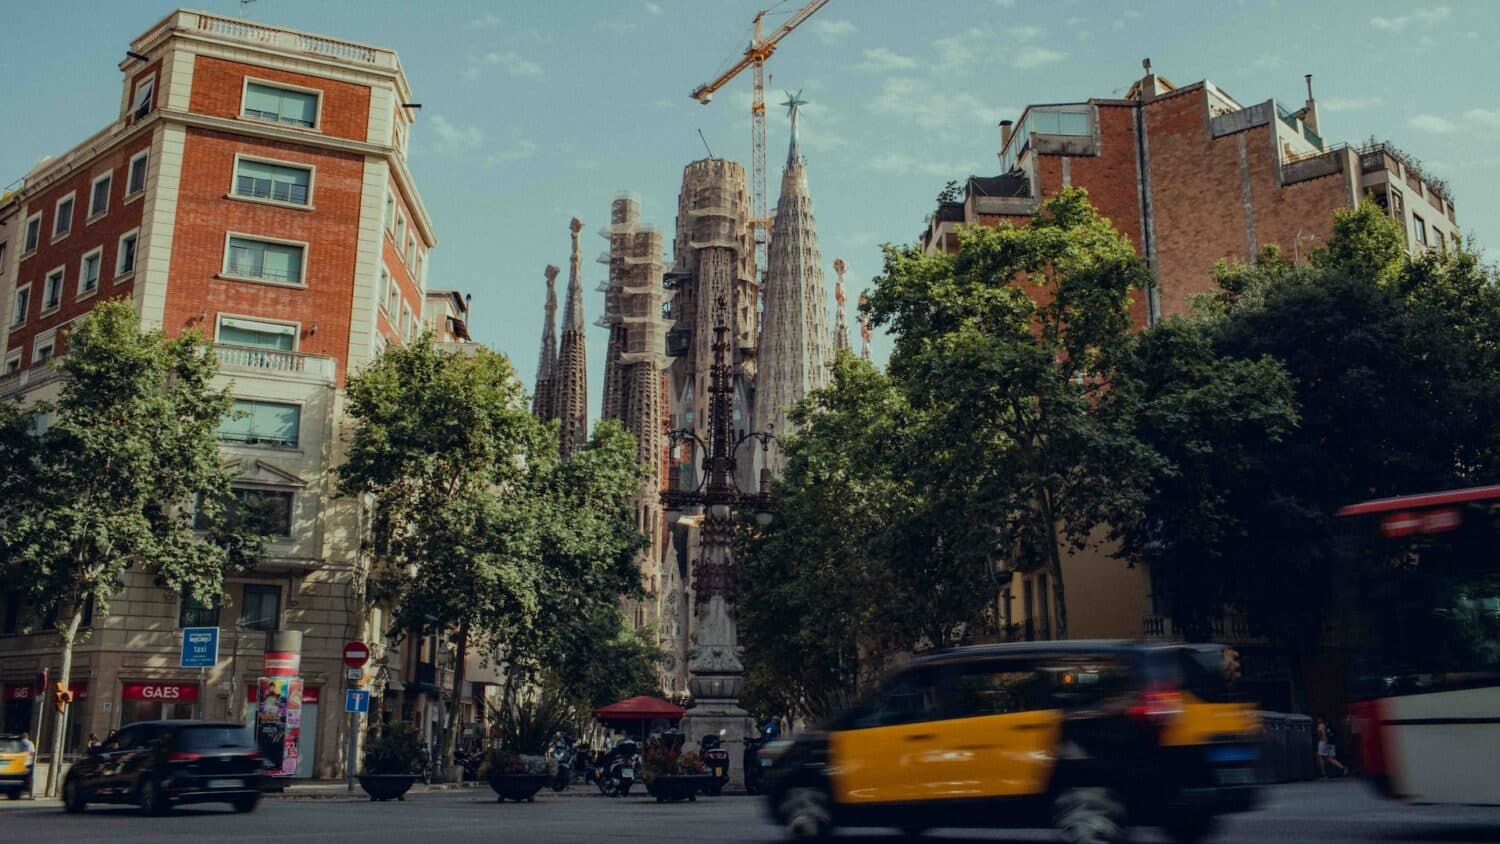 Carros e táxis passando na rua em frente a prédios com a Sagrada Família ao fundo. A foto épara ilustrar o post sobre aluguel de carro em Barcelona, e na rua há muitas árvores. O céu acima está azul. - Foto: Tom Morbey via Unsplash